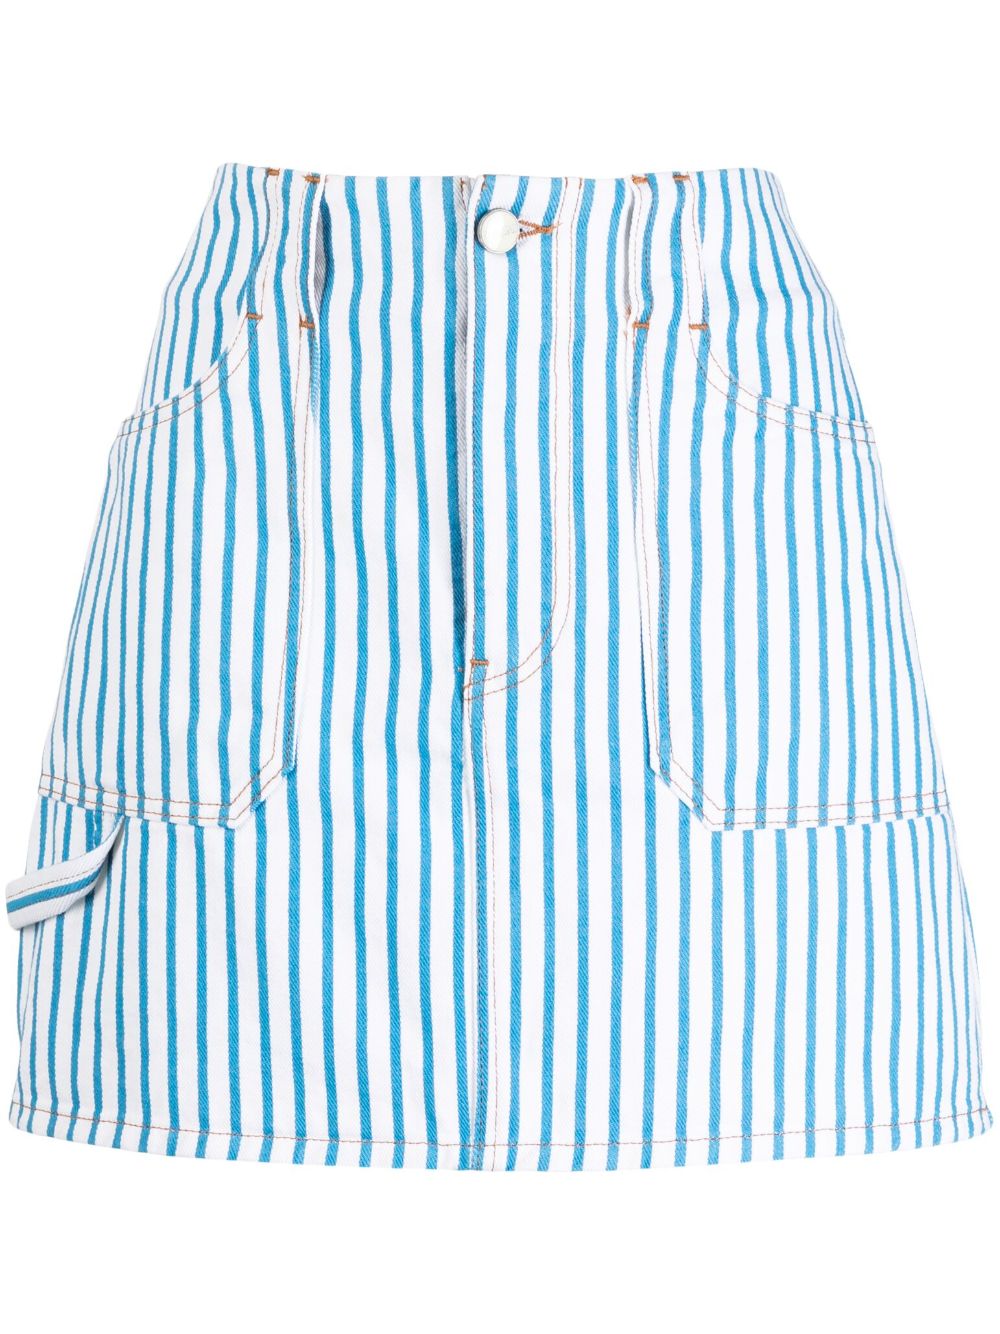 GANNI Striped Denim Skirt - Farfetch